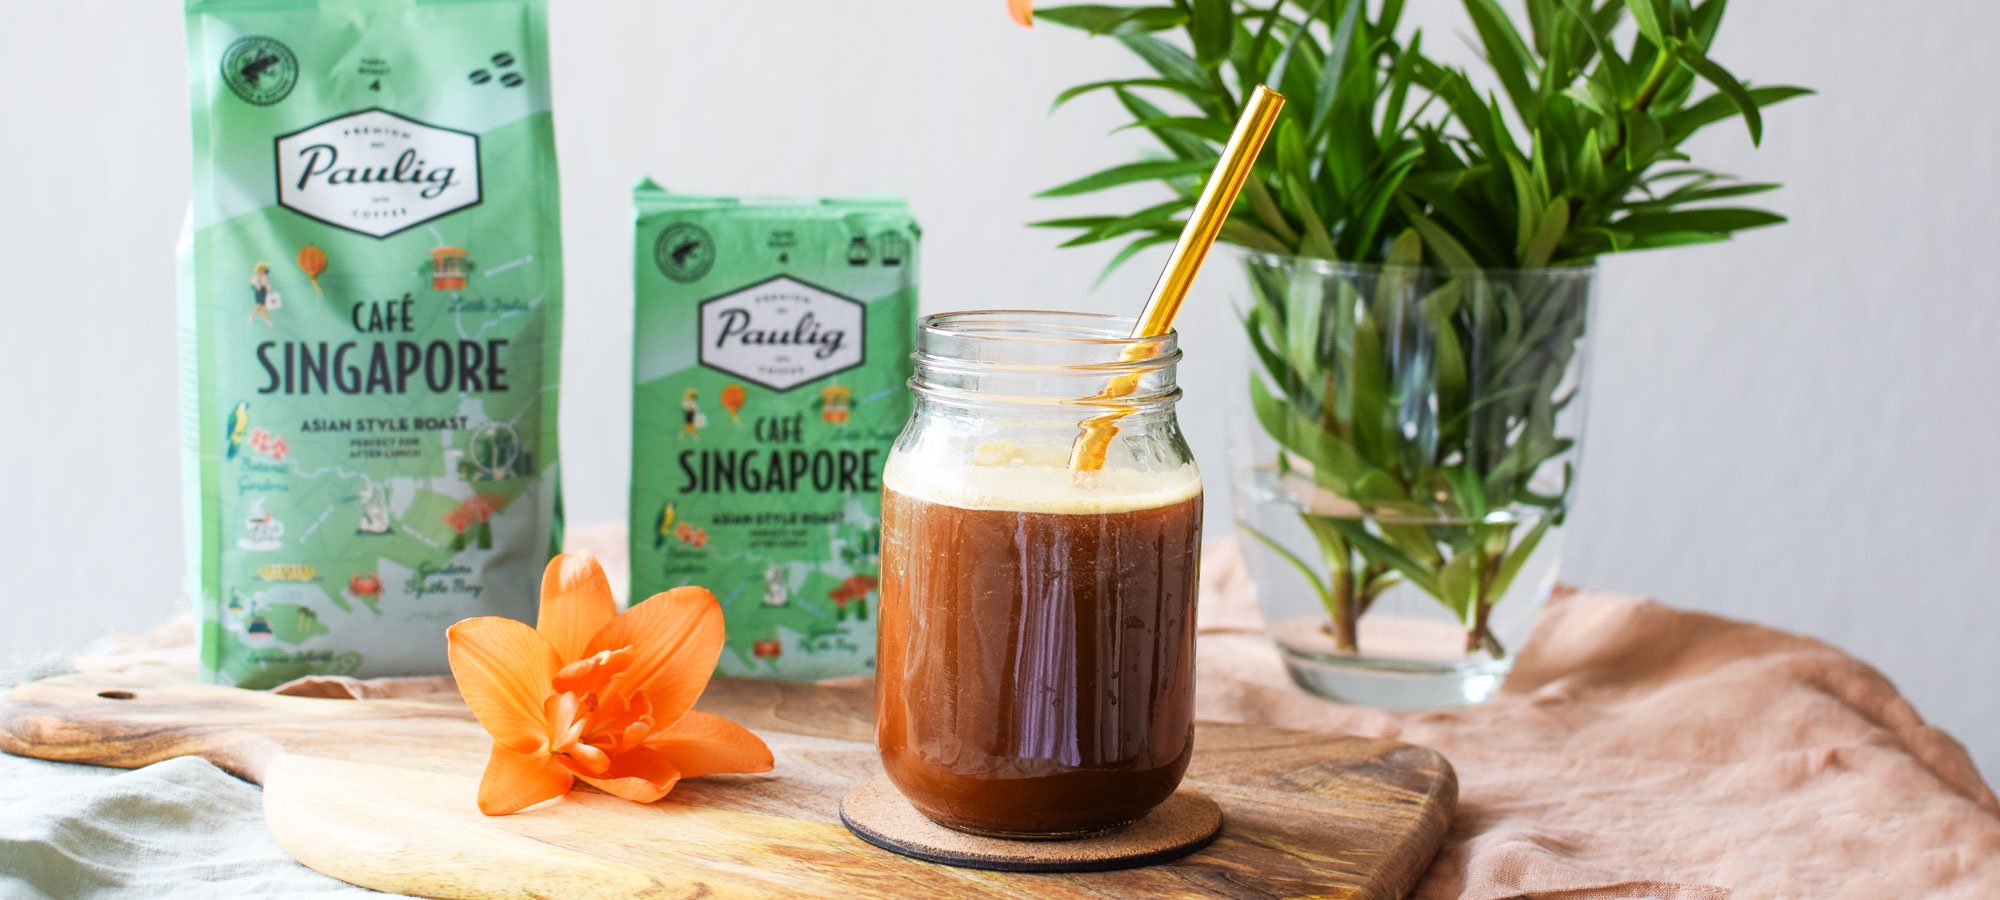 Vegaaninen kookos frappe valmistuu ihanasta uutuus-kaupunkikahvista Café Singaporesta ja kondensoidusta kookosmaidosta